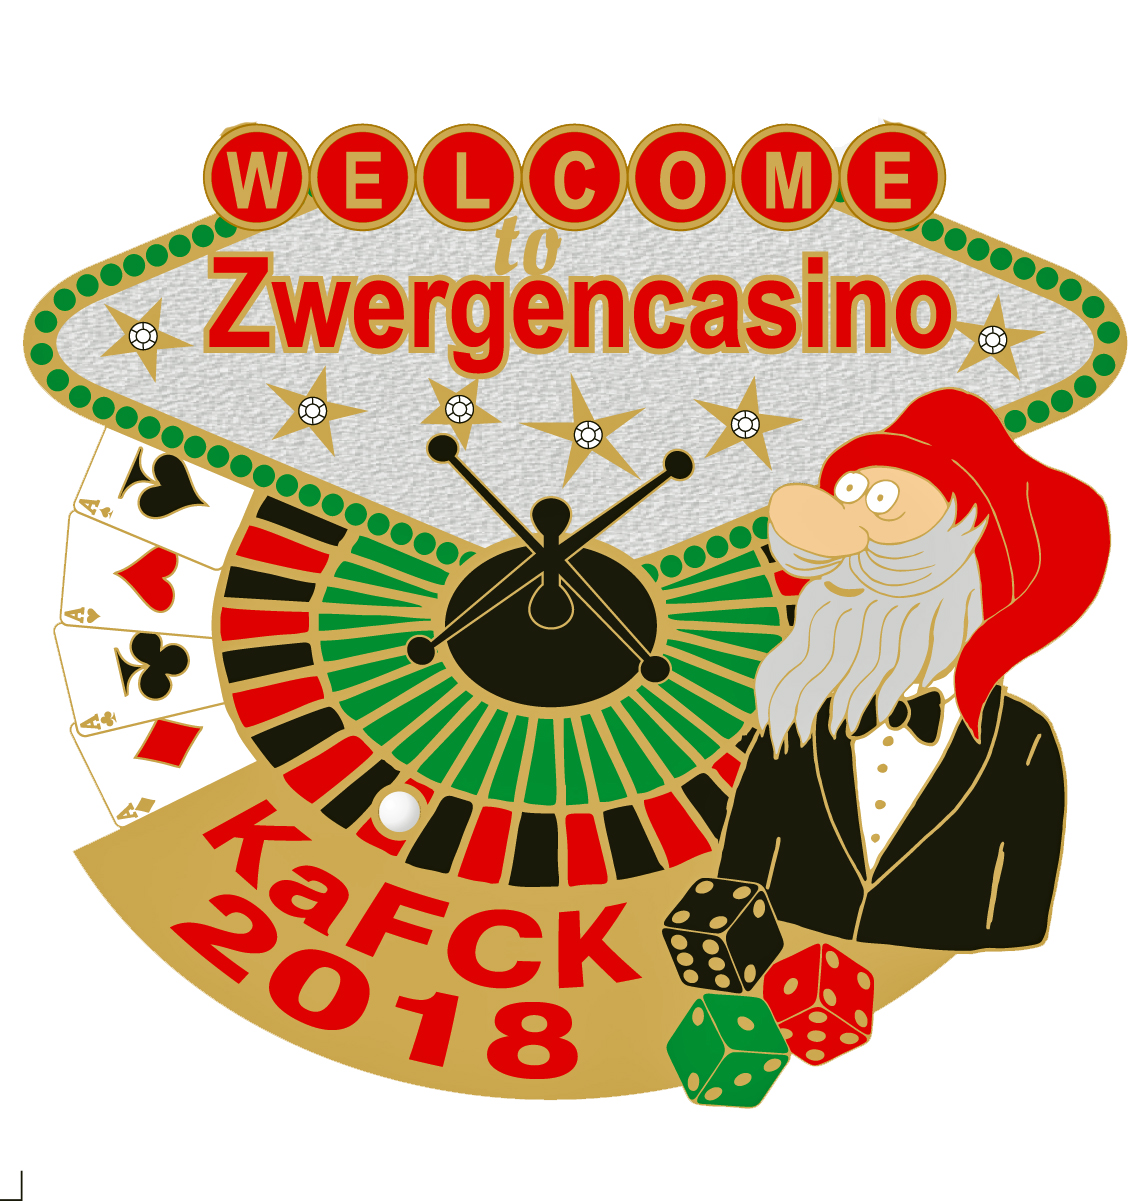 Zwergen Casino 2018